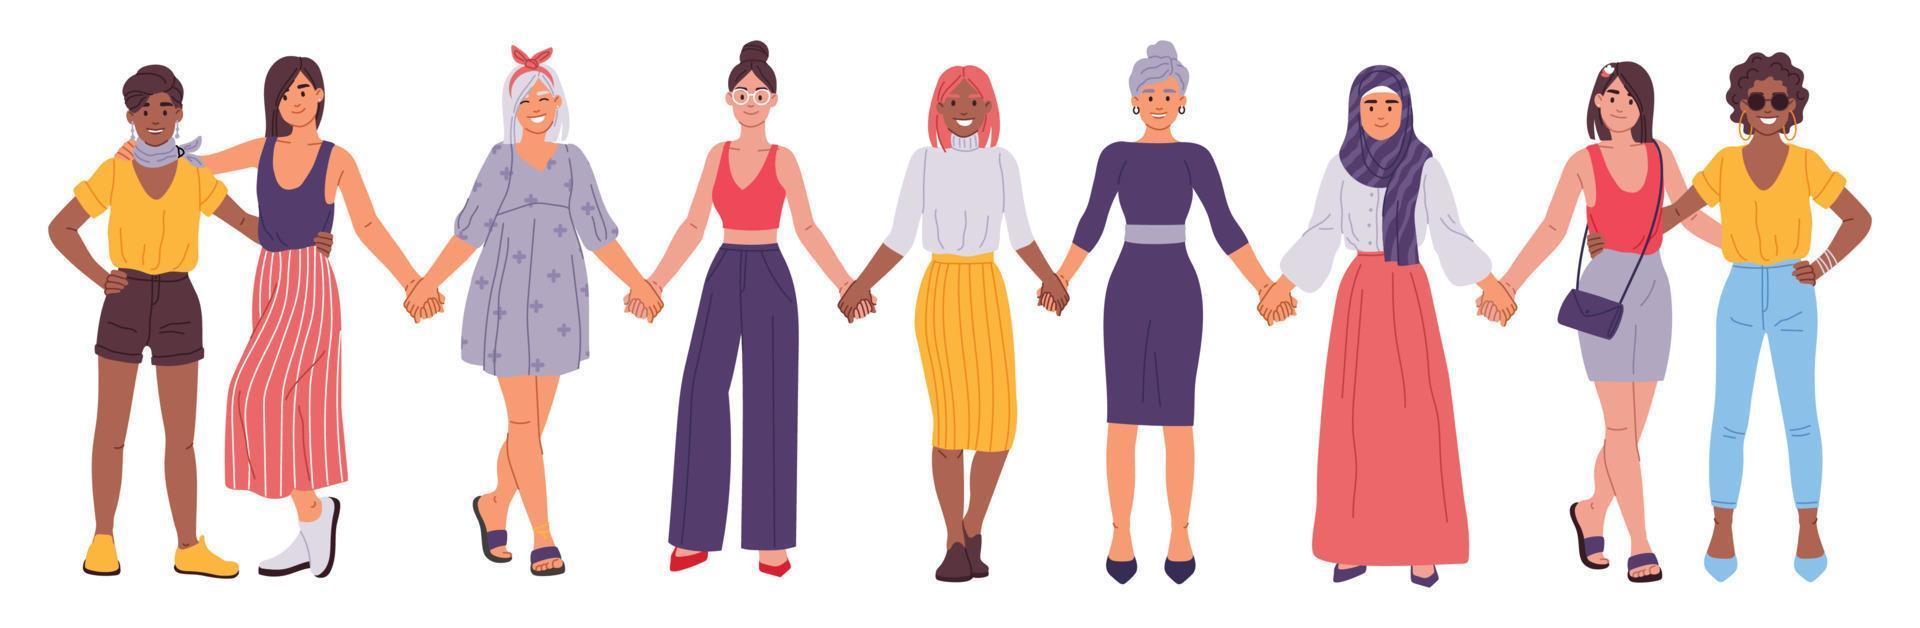 Frauen halten Hände, Freundinnen Stehen zusammen, Schwesternschaft Konzept. vielfältig Gruppe von weiblich Freunde, Mädchen Freundschaft Vektor Illustration